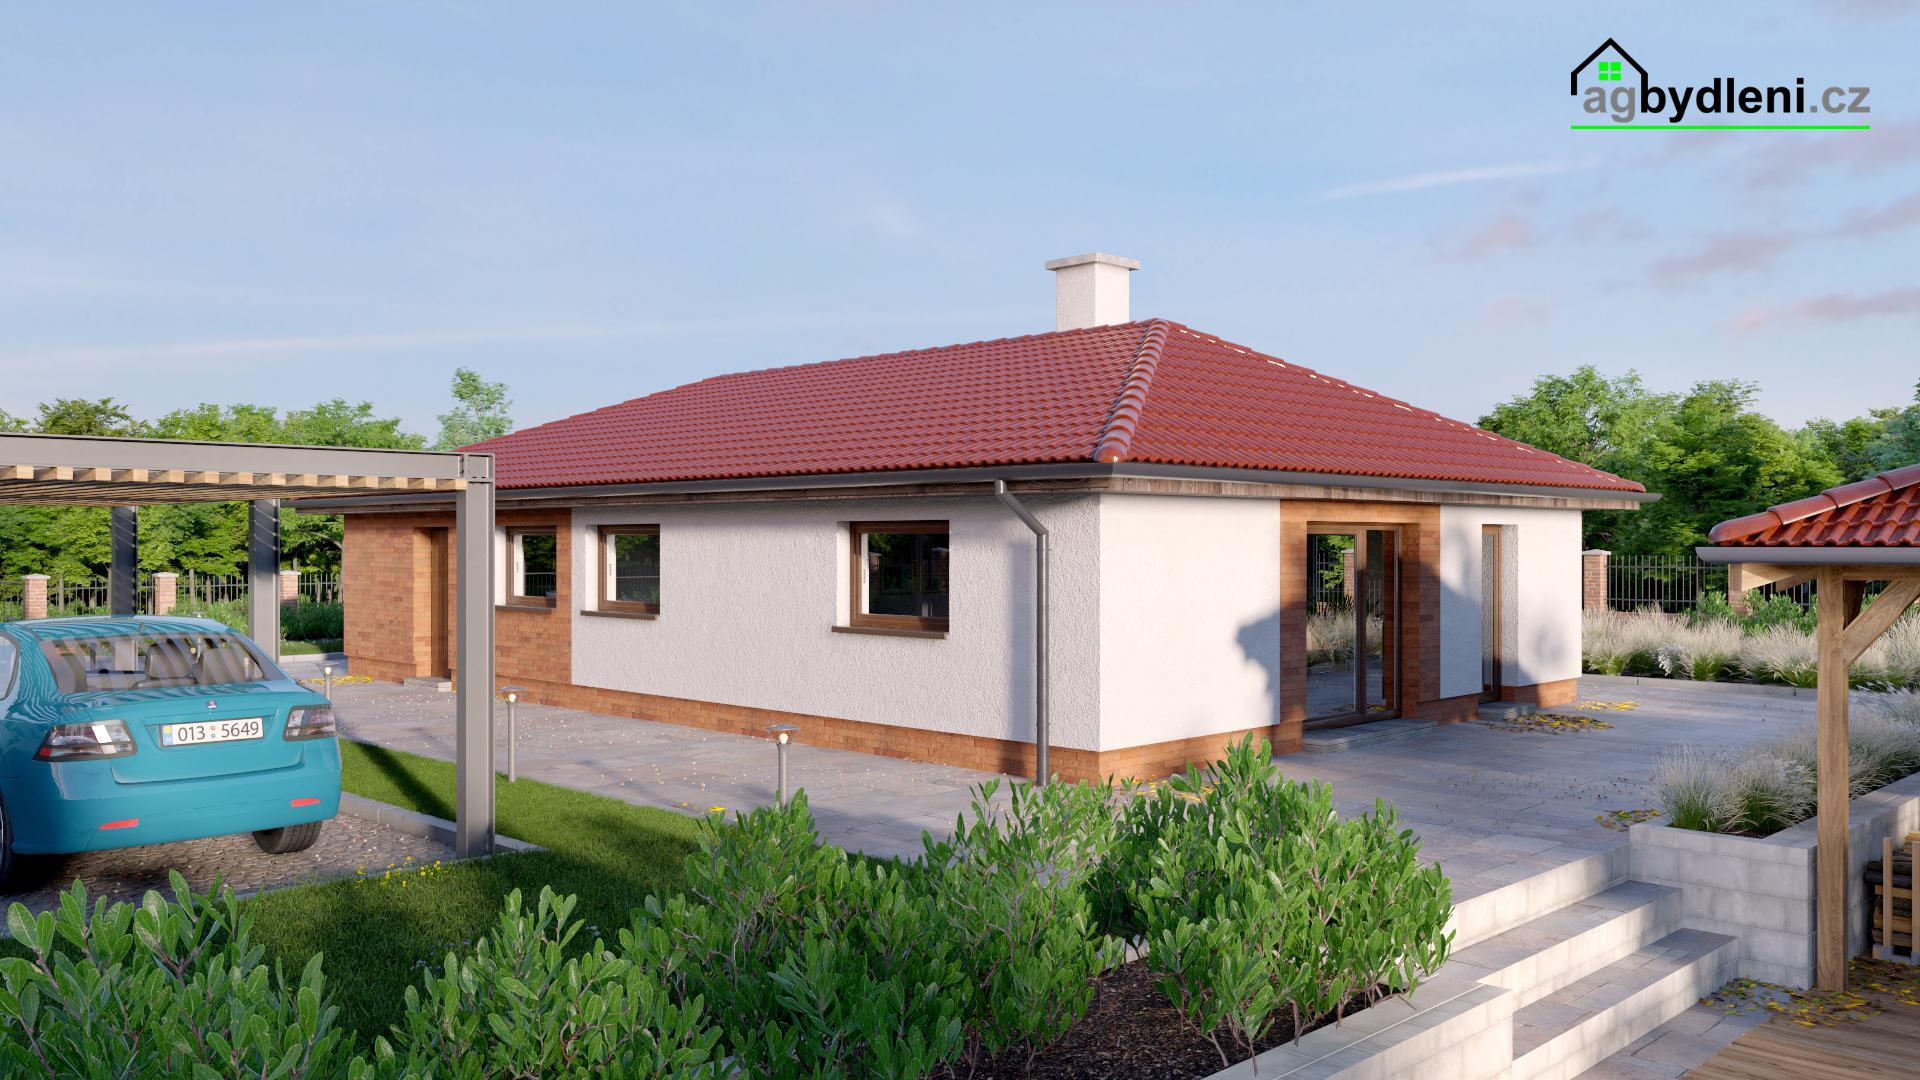 Prodej novostavby rodinného domu typu bungalov na zajištěném pozemku 1249 m2, obrázek č. 2